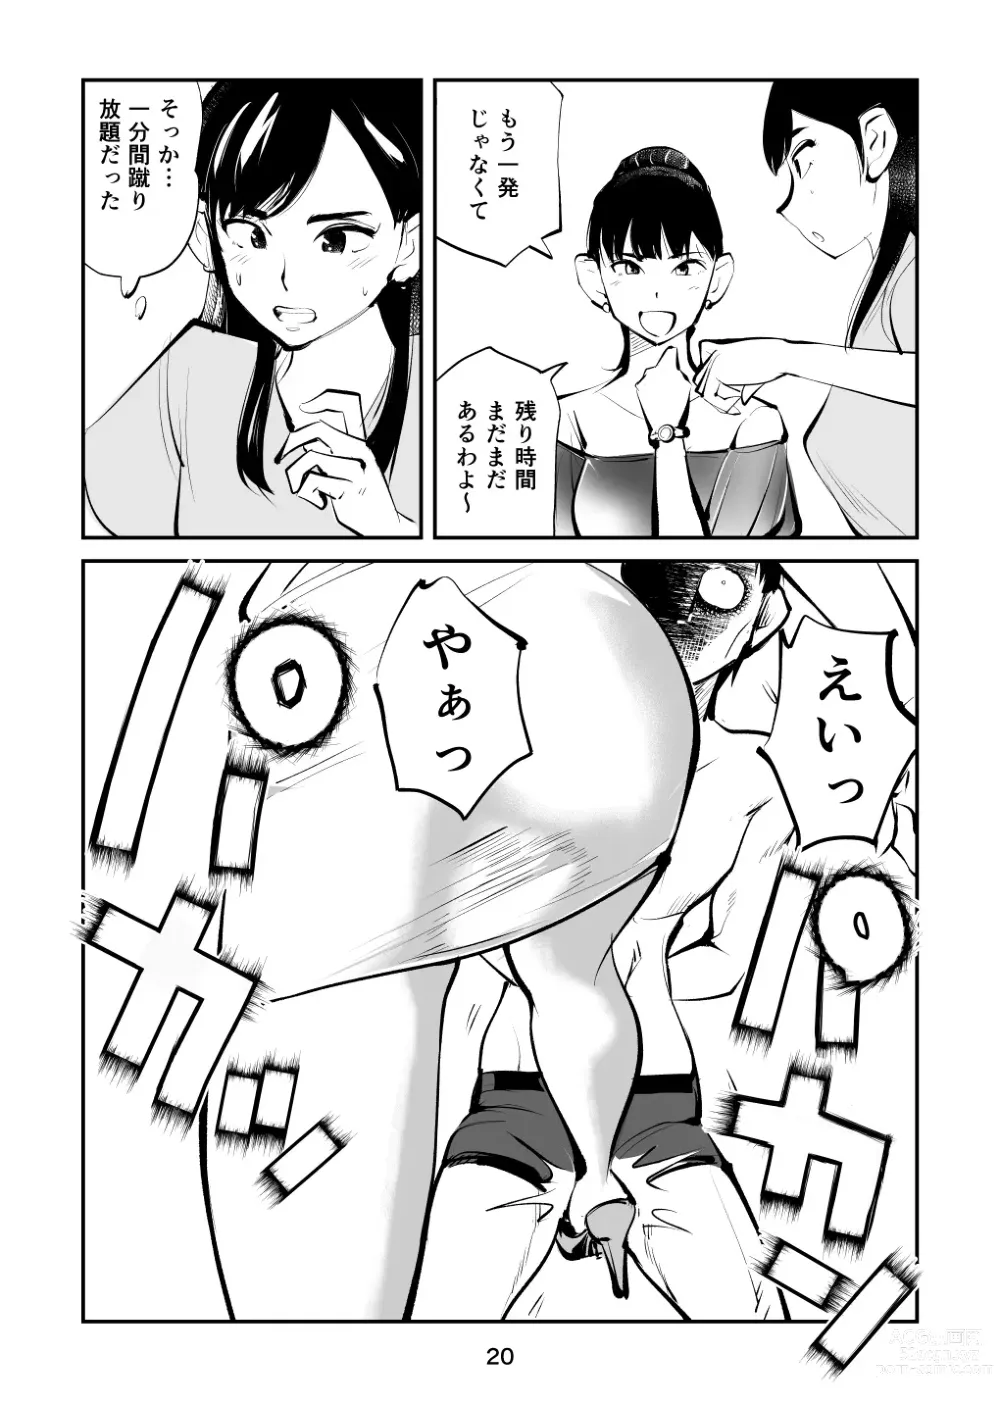 Page 20 of doujinshi Kintama o tsubushita joshi-ana